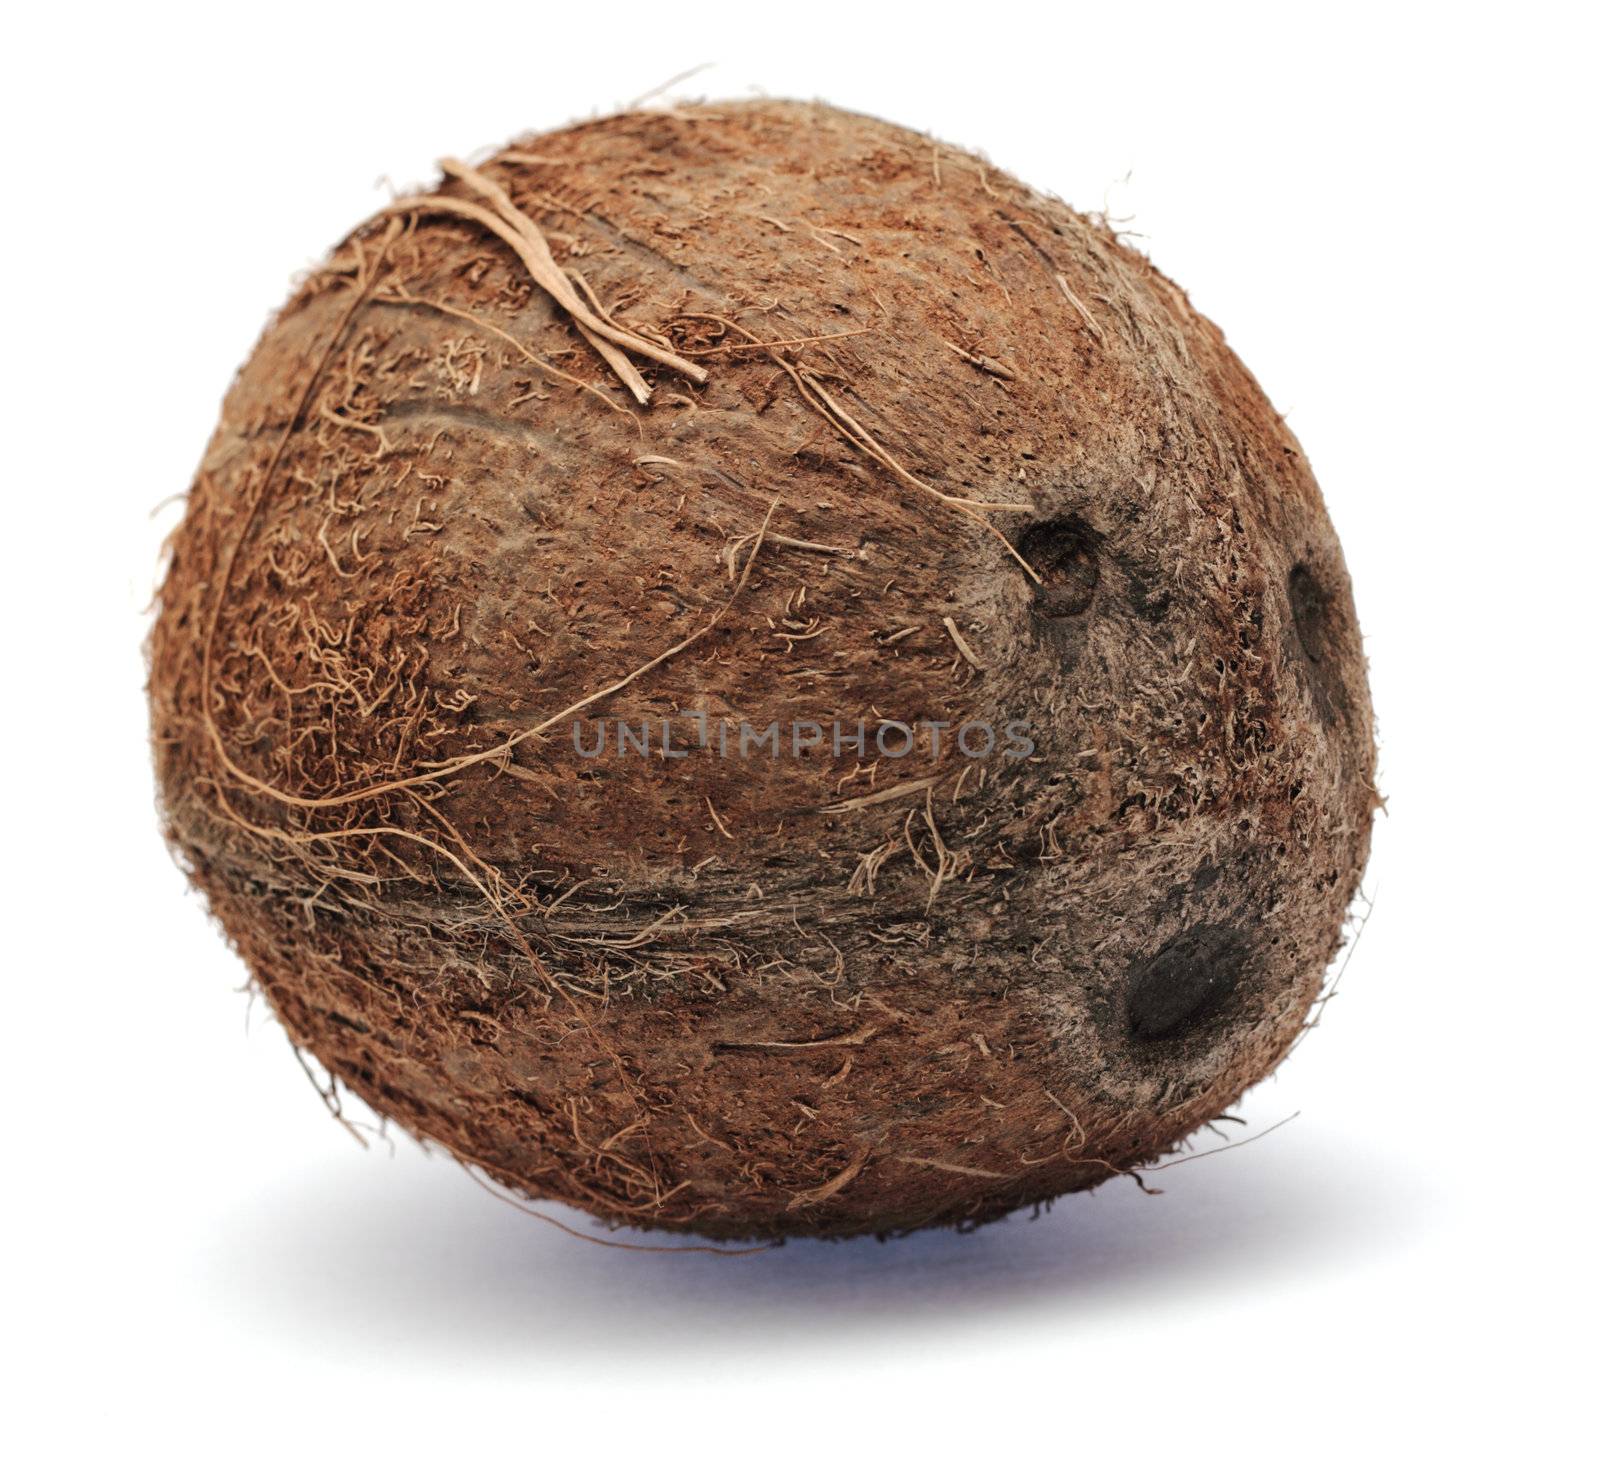 Coconut isolated on white background by Gdolgikh